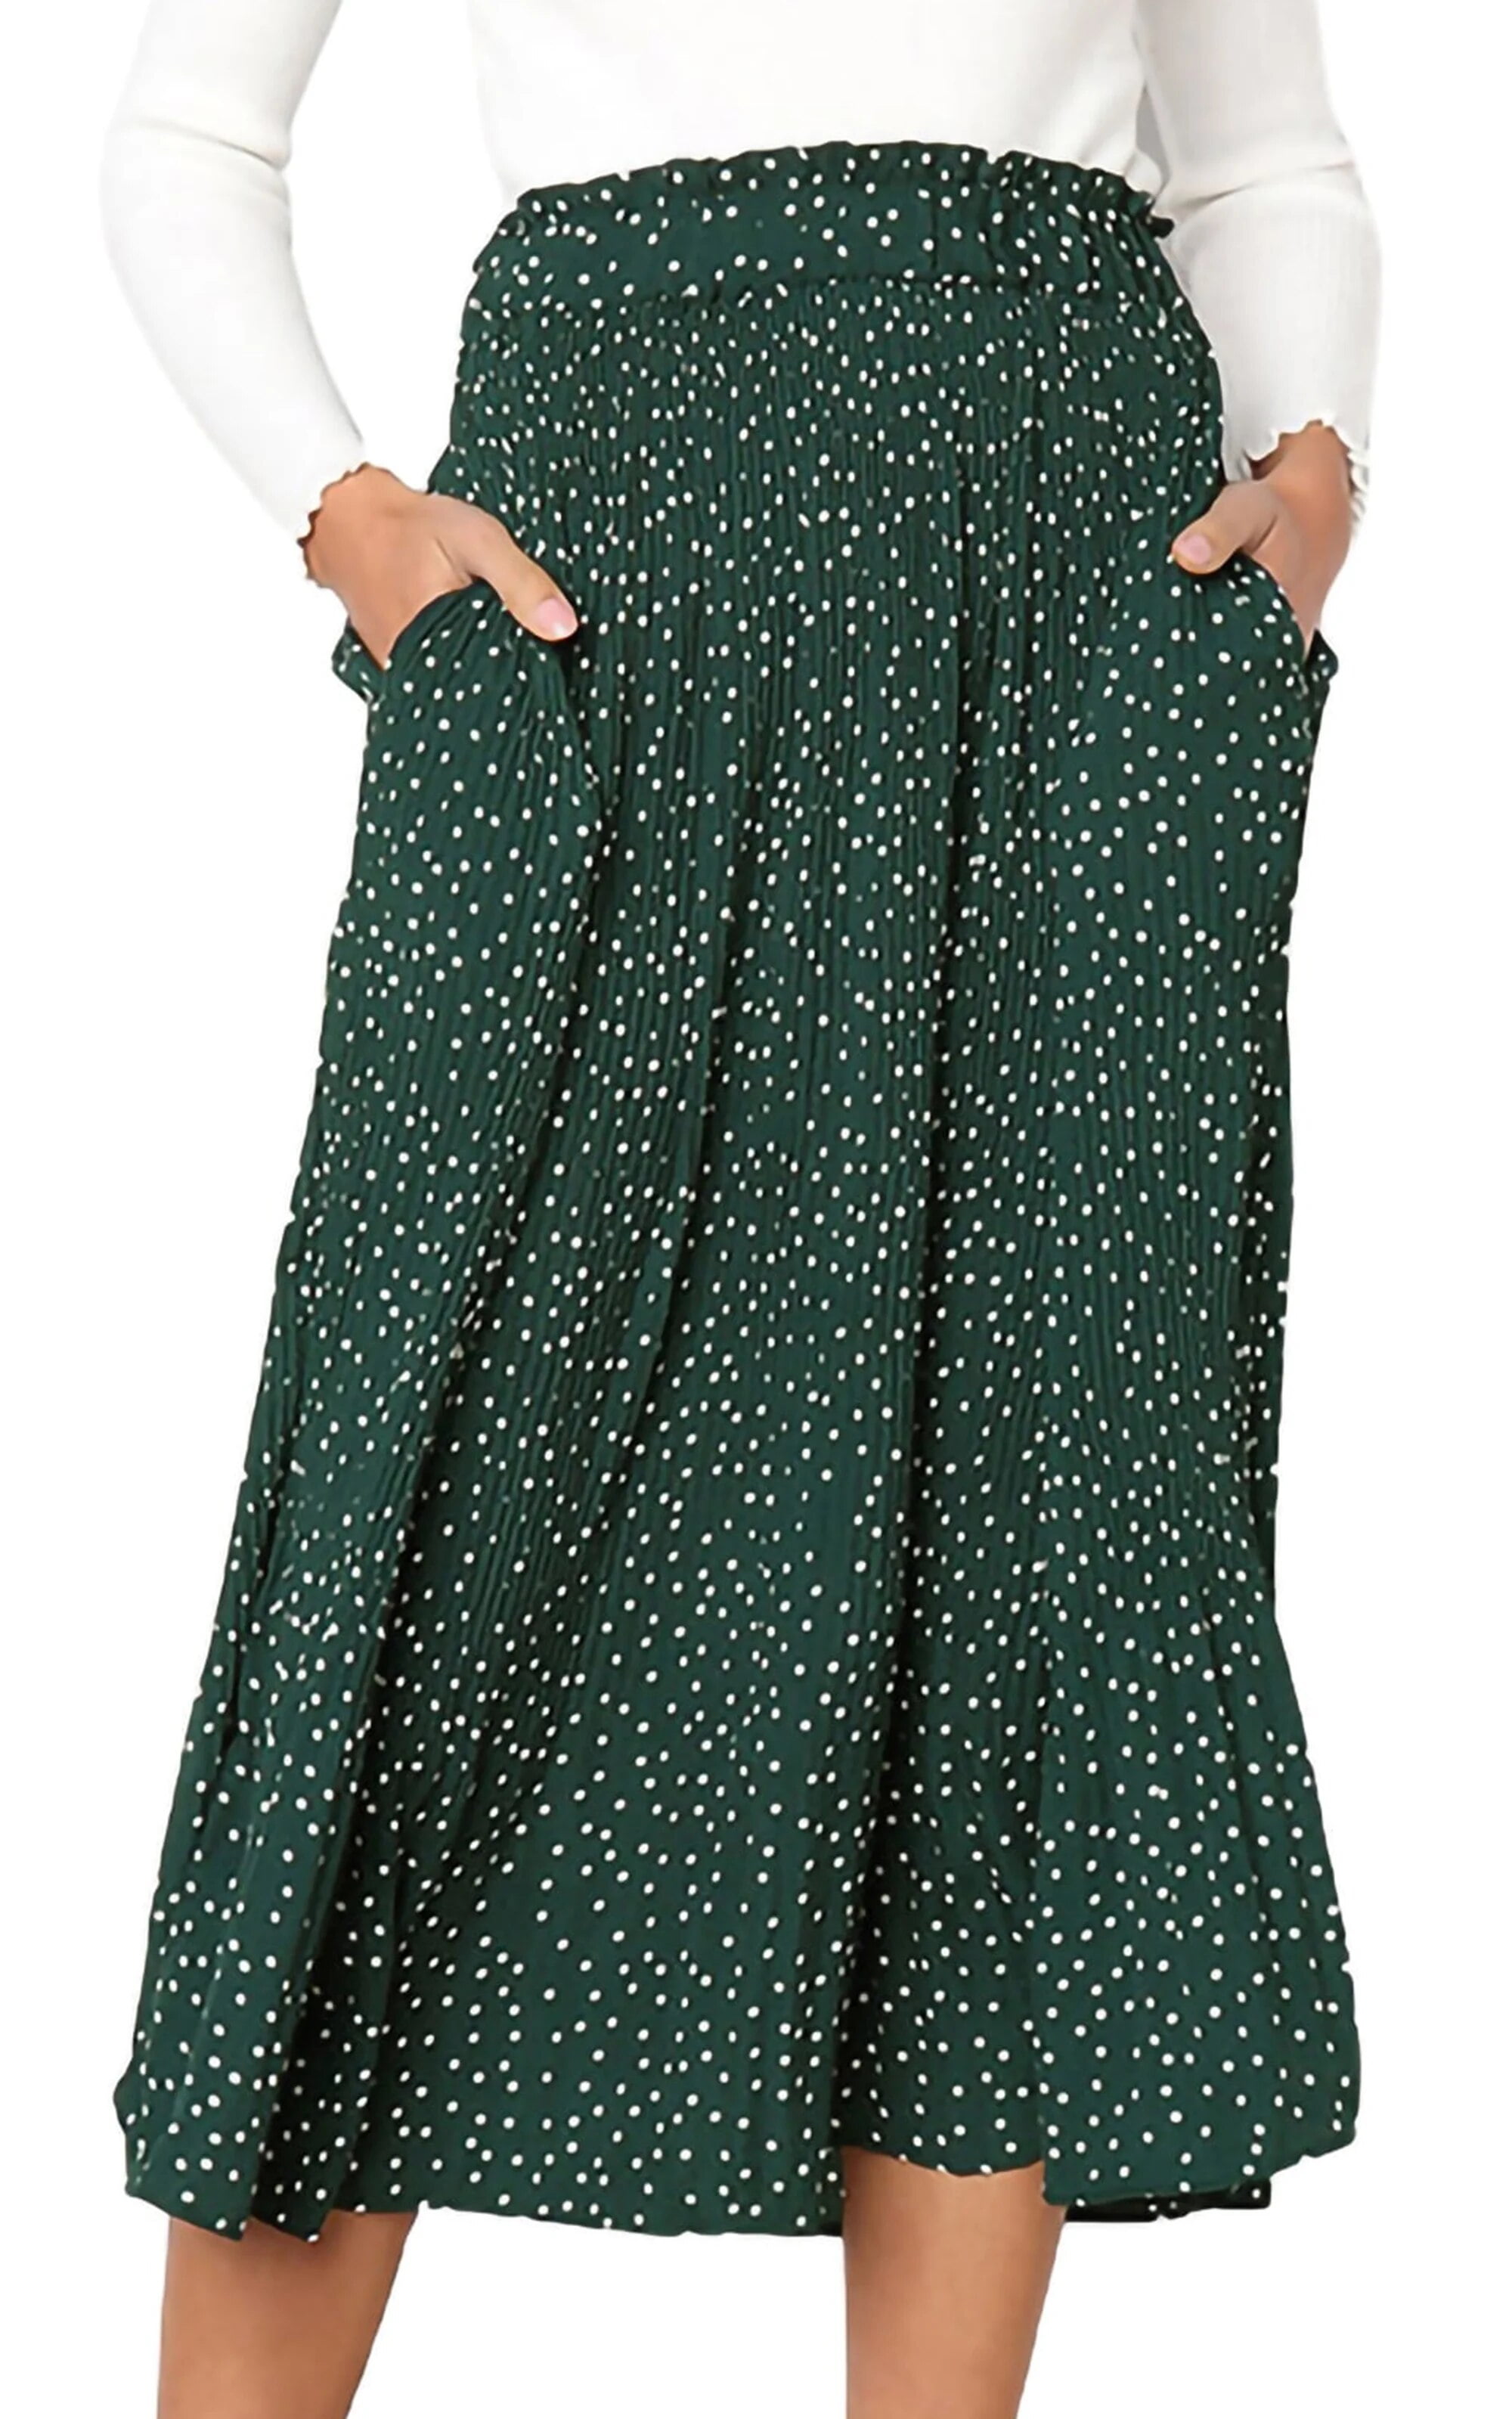 Fantaslook Midi Pleated Skirts for Women Polka Dot Swing High Waist ...